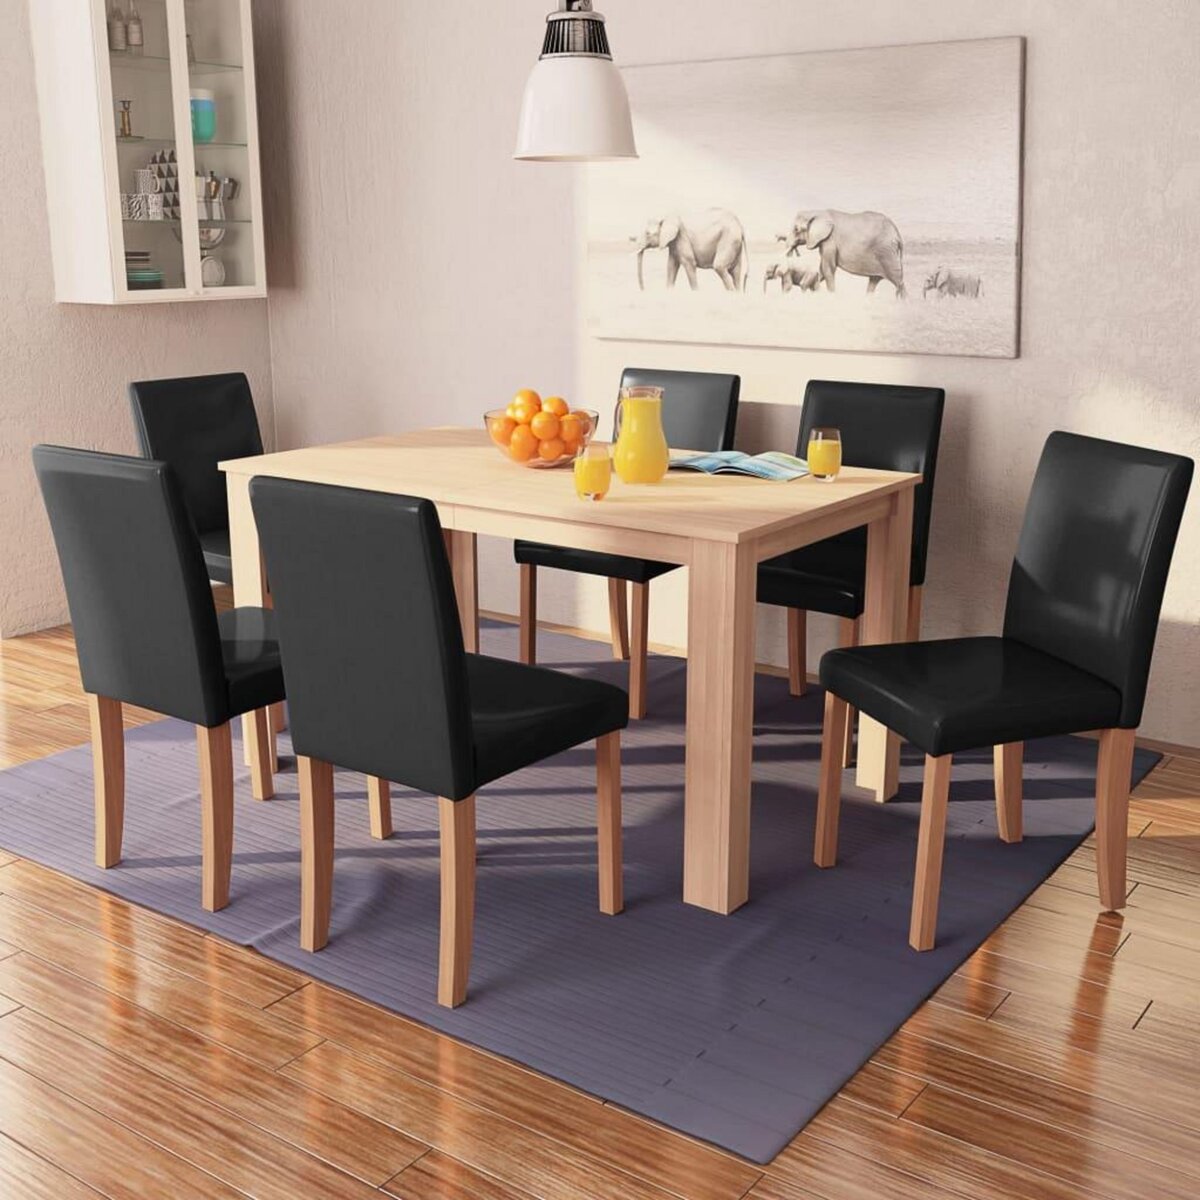 VIDAXL Table et chaises 7 pcs Cuir synthetique Chene Noir